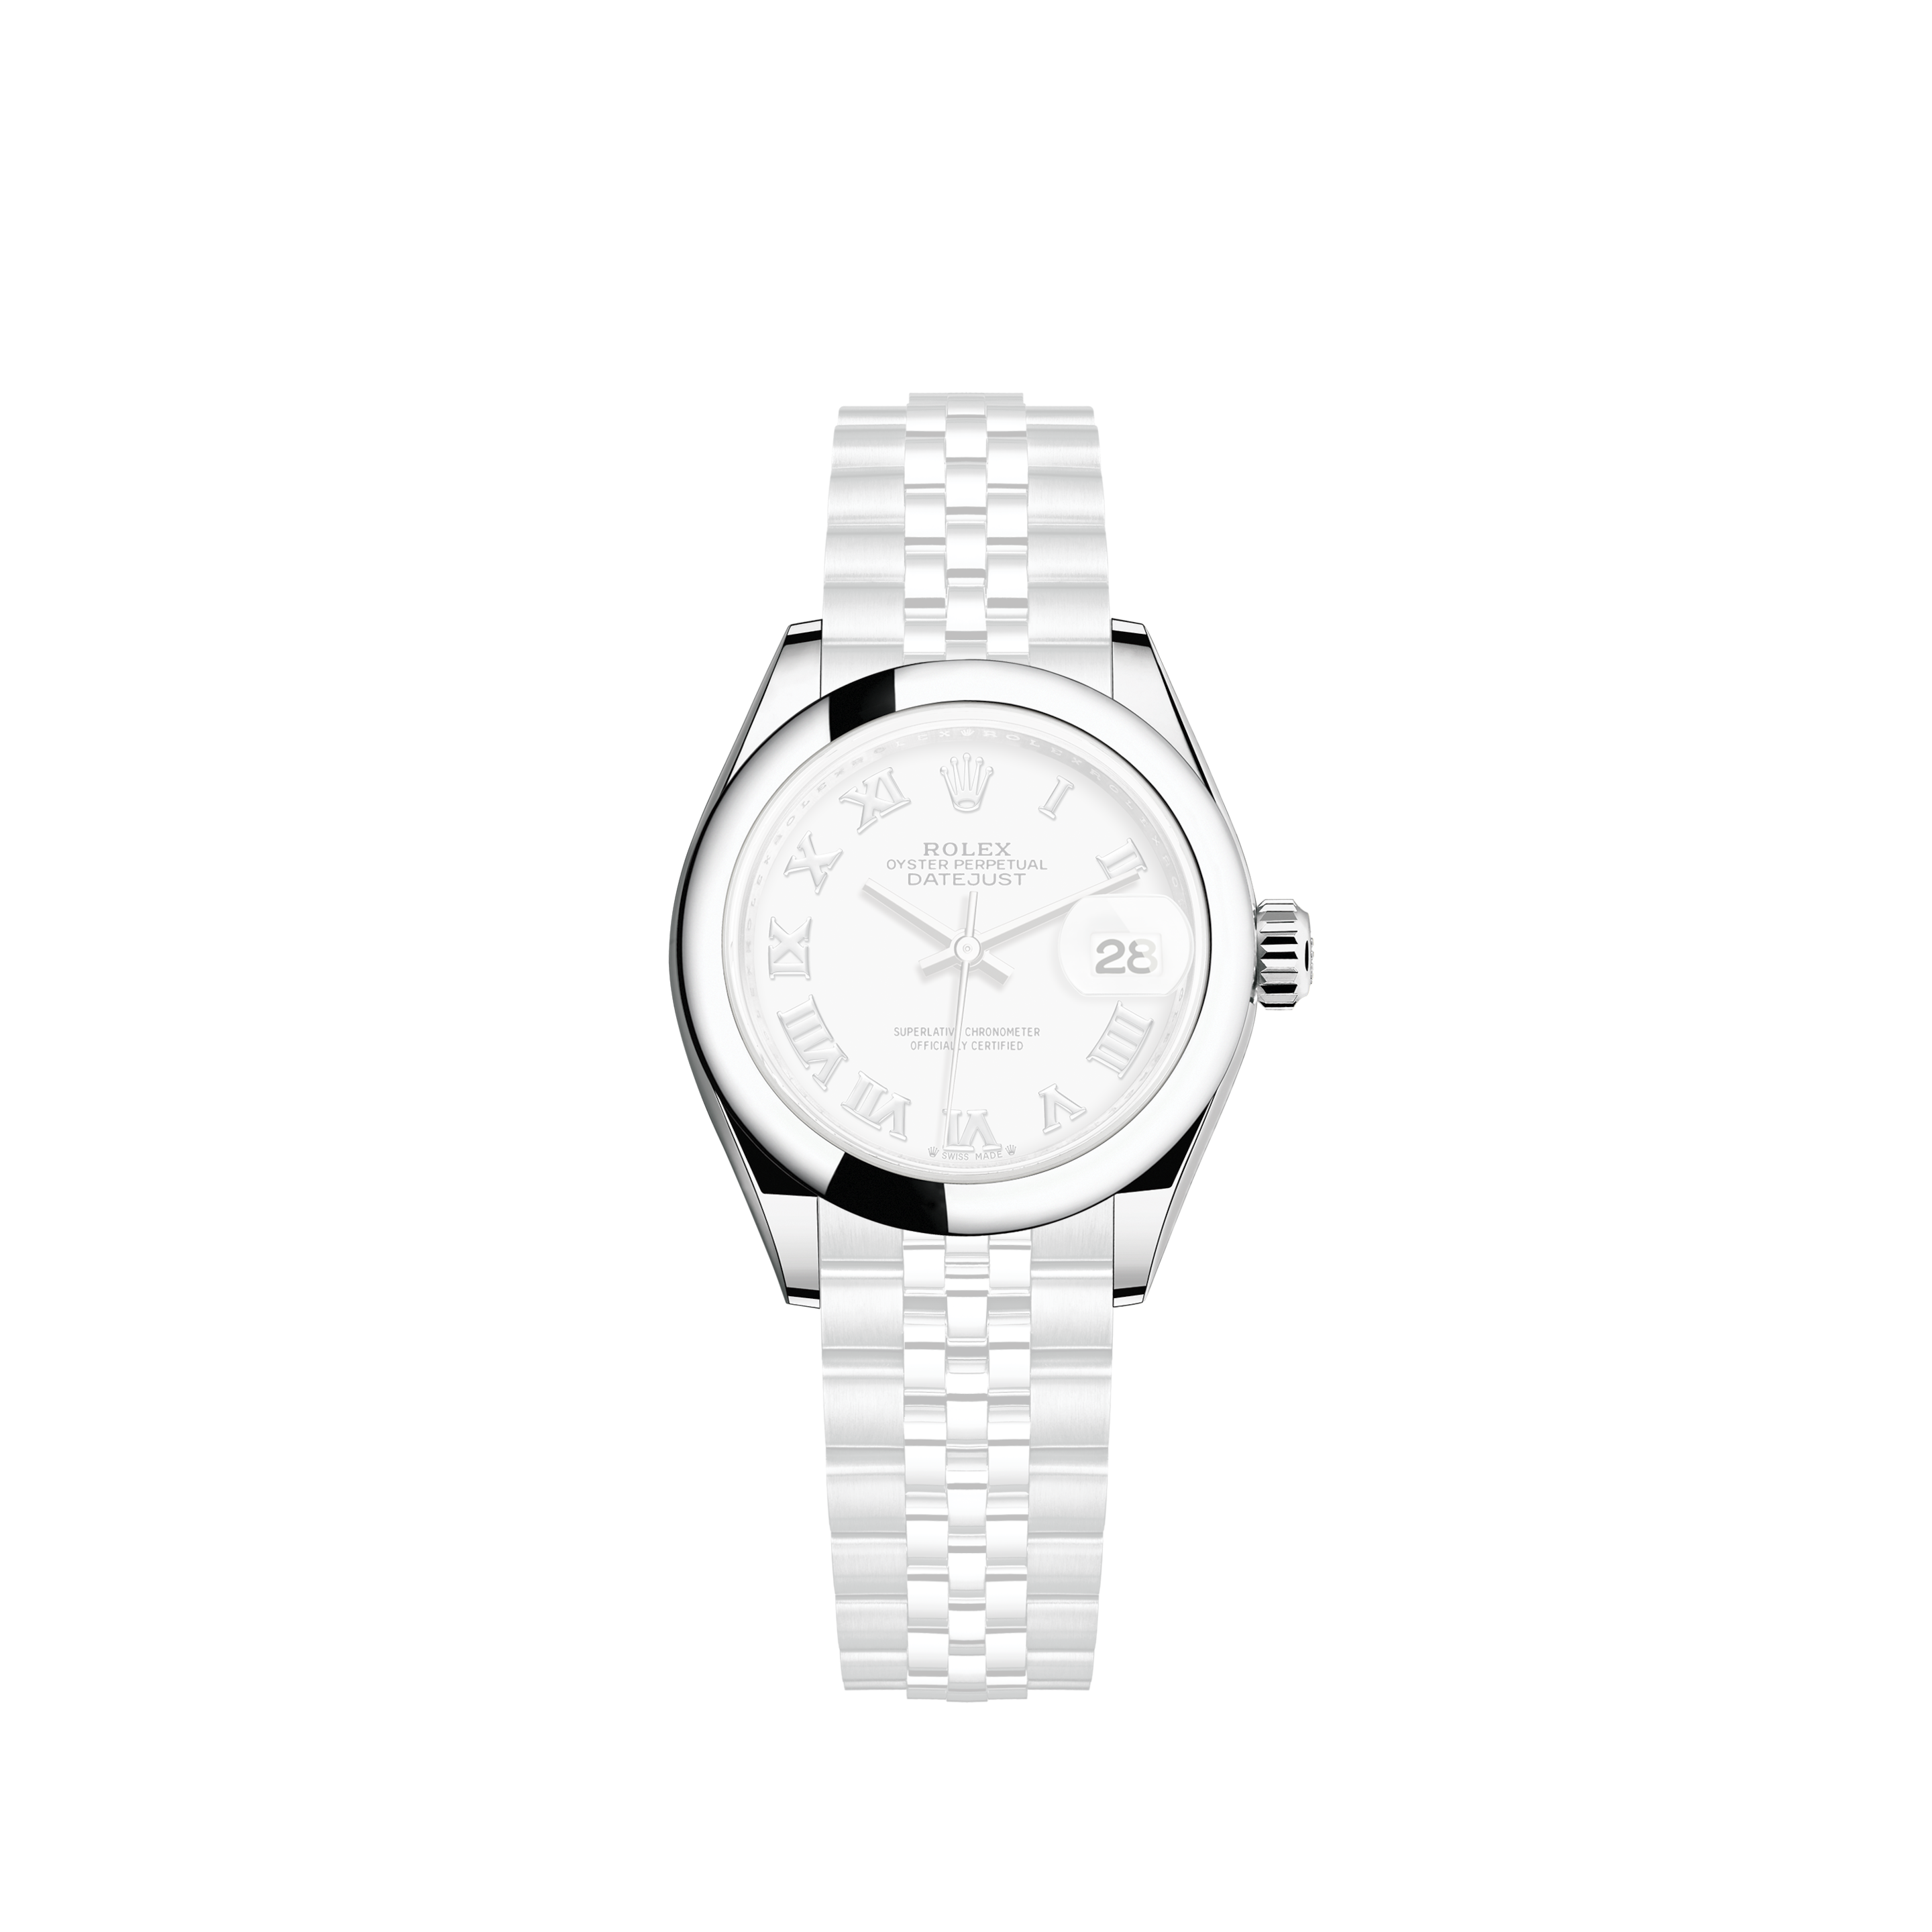 Rolex 1954 Vintage Rolex Ladies Precision Reference 9169 Stainless Steel Watch (# 13453)Rolex 1954 Vintage Rolex Oyster Perpetual Ladies Ref. 6504 Stainless Steel Watch (# 11753)